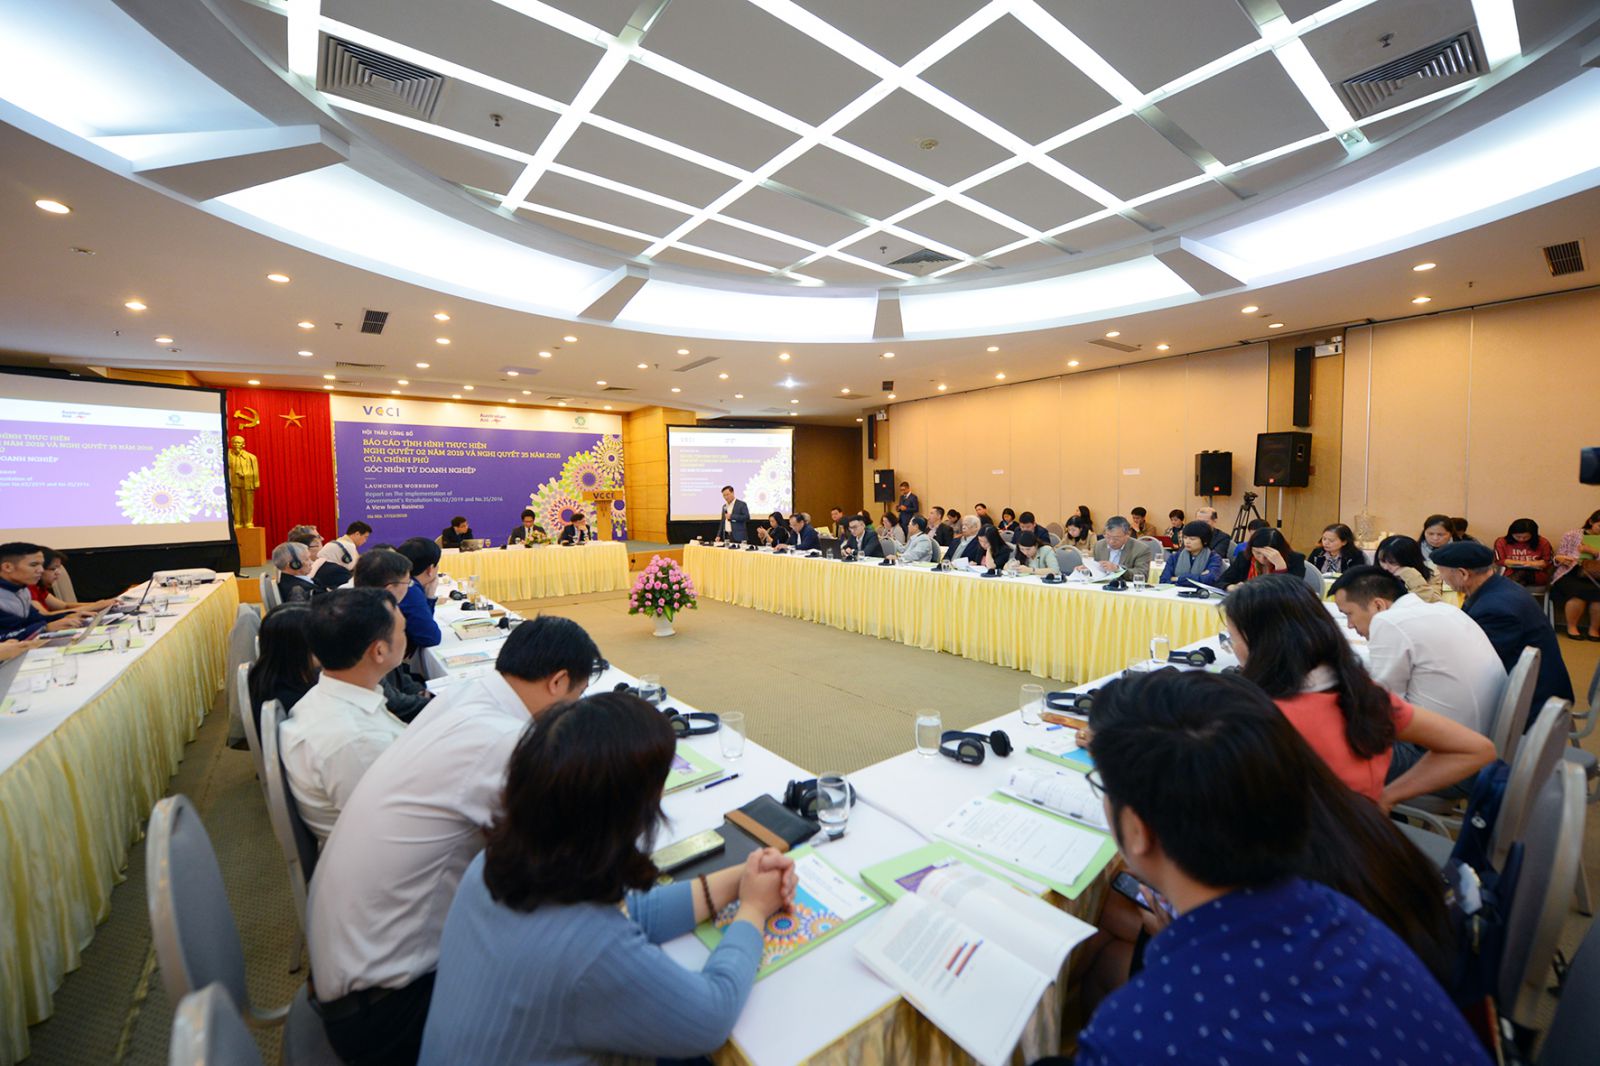 p/Hội thảo công bố báo cáo tình hình thực hiện nghị quyết 02 năm 2019 và nghị quyết 35 năm 2016 của Chính phủ, góc nhìn từ doanh nghiệp do VCCI tổ chức đã khẳng định: Việt Nam phải vượt ít nhất 42 bậc nữa về môi trường kinh doanh để có thể bước vào nhóm 4 ASEAN .